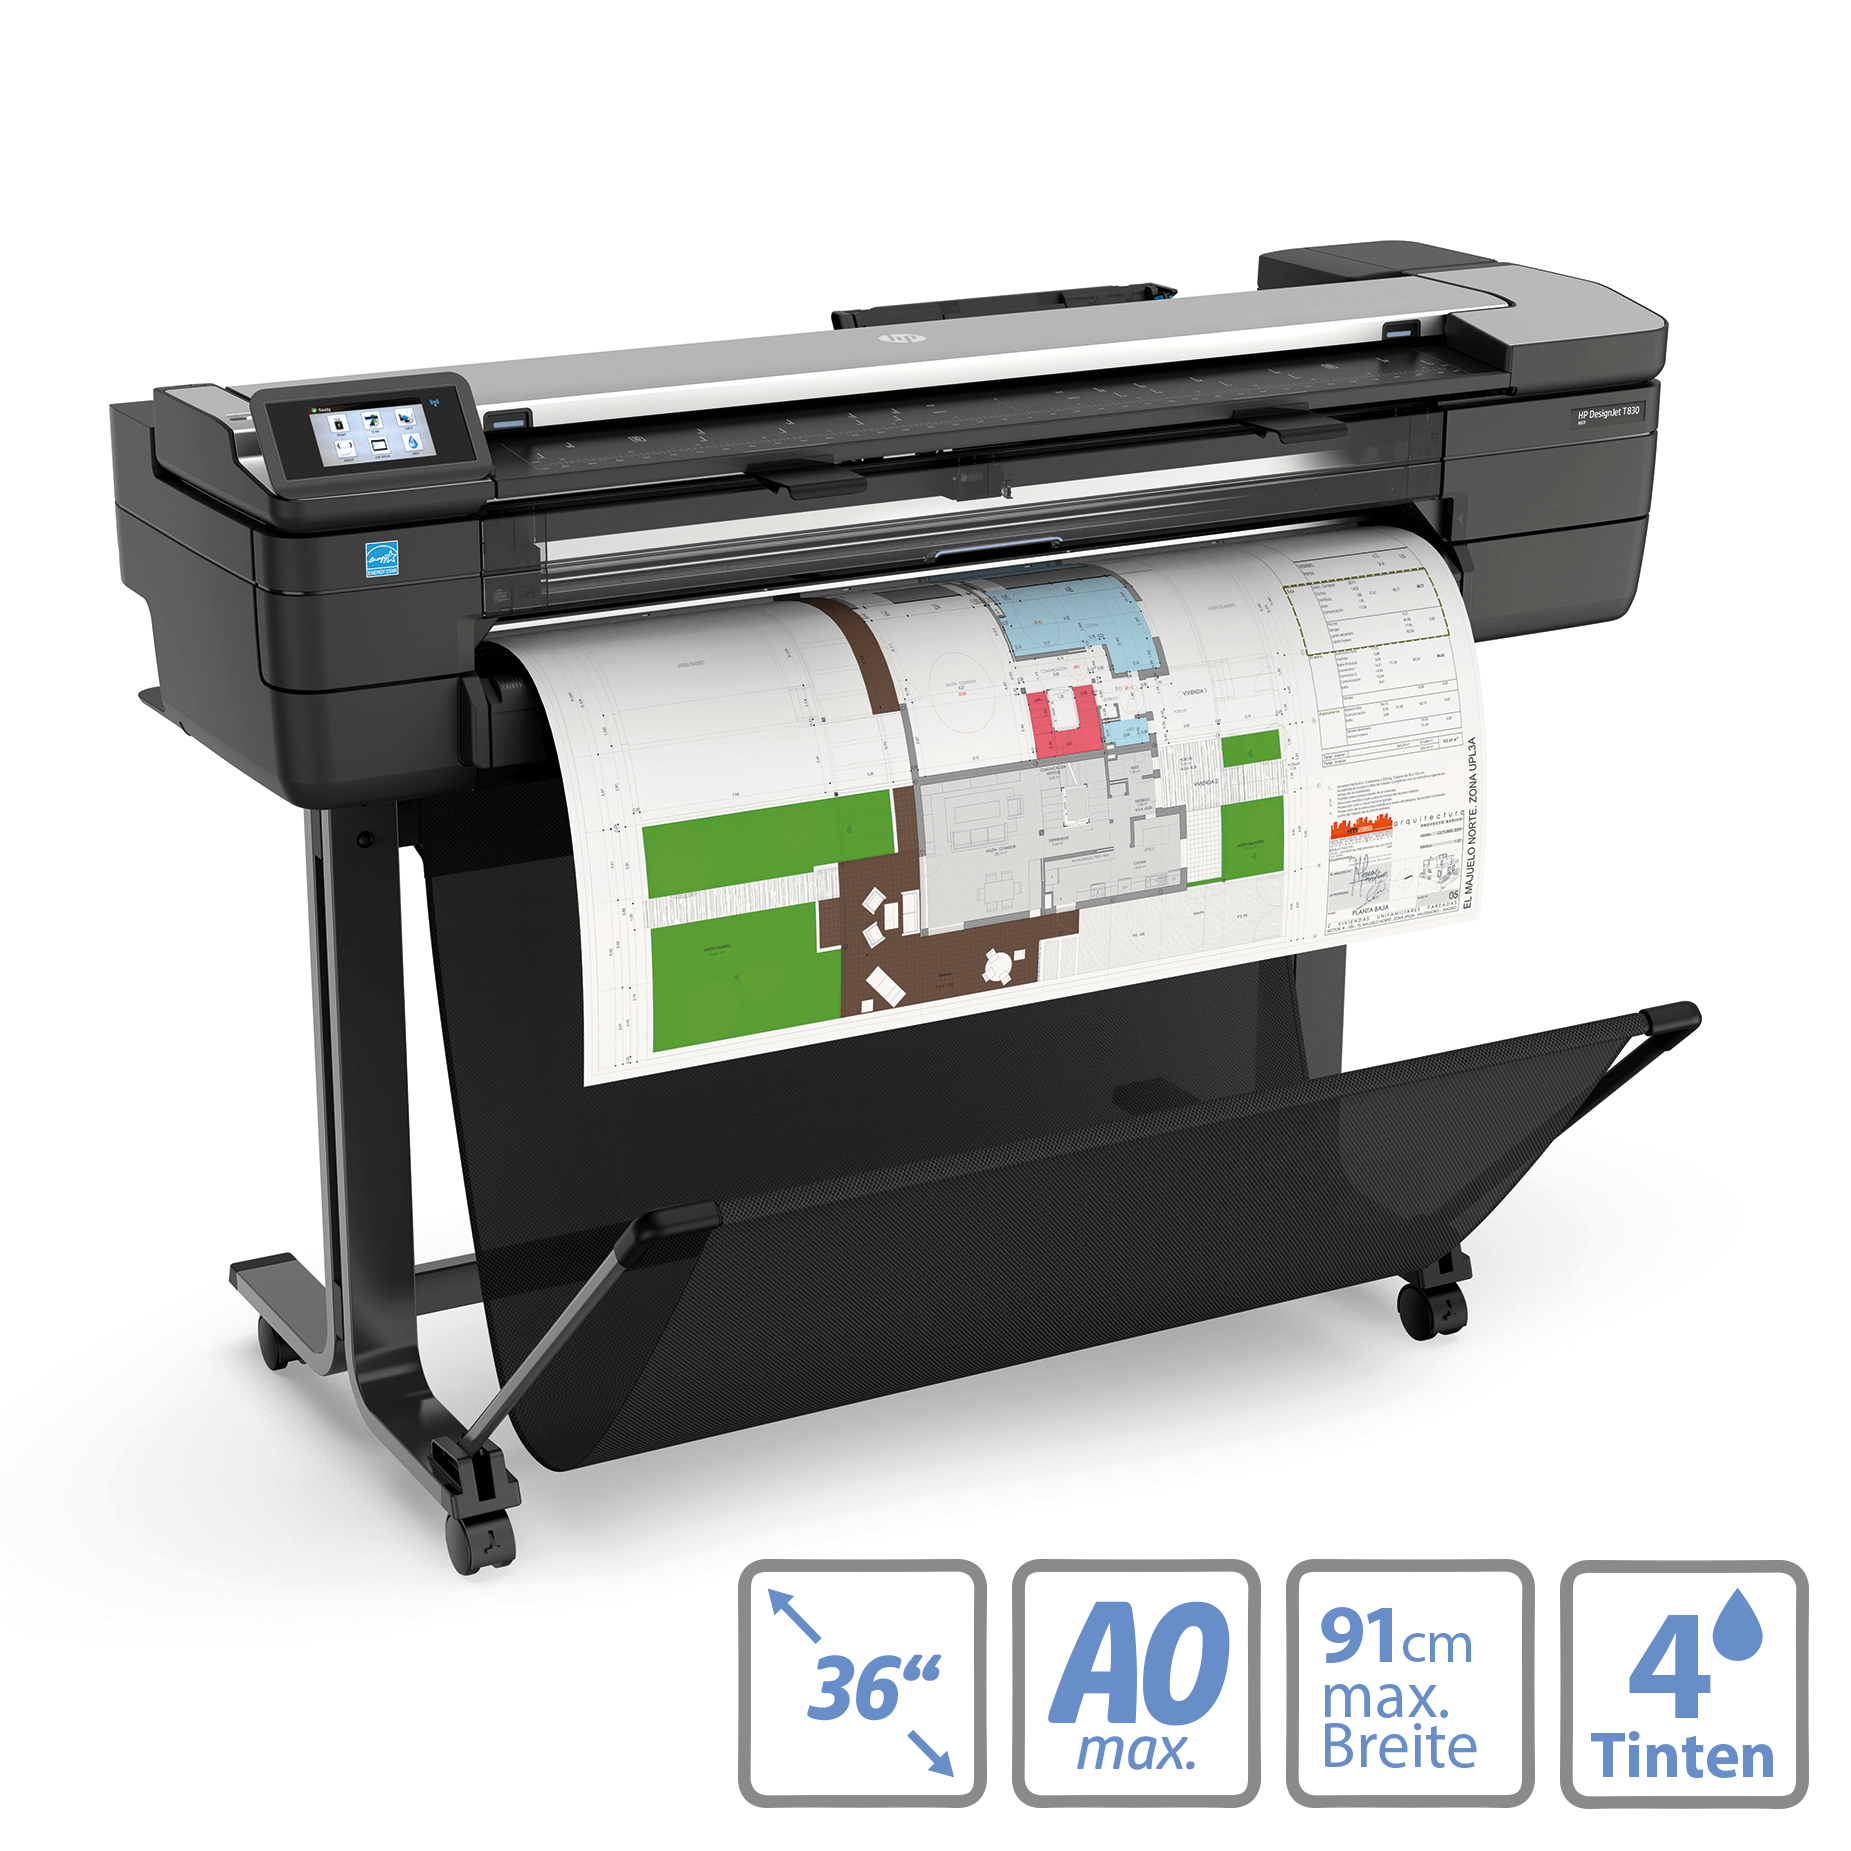 HP Designjet T830 MFP: Multifunktionaler Großformatdrucker mit 91cm (36 Zoll) Druckbreite und 4 Druckfarben